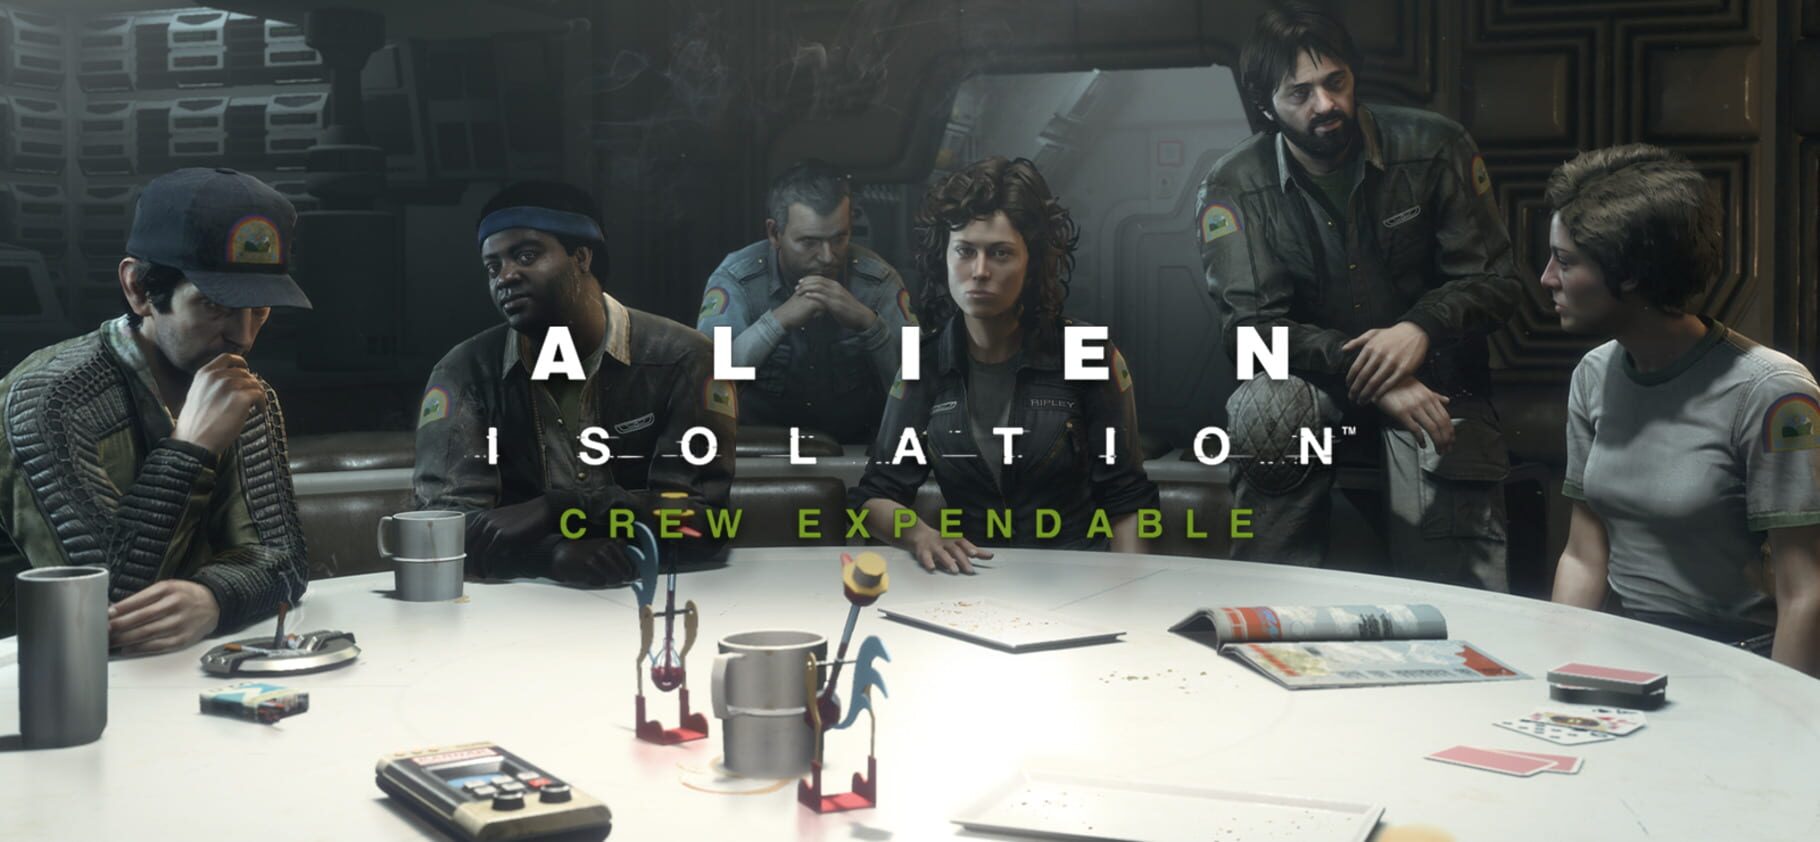 Arte - Alien: Isolation - Crew Expendable